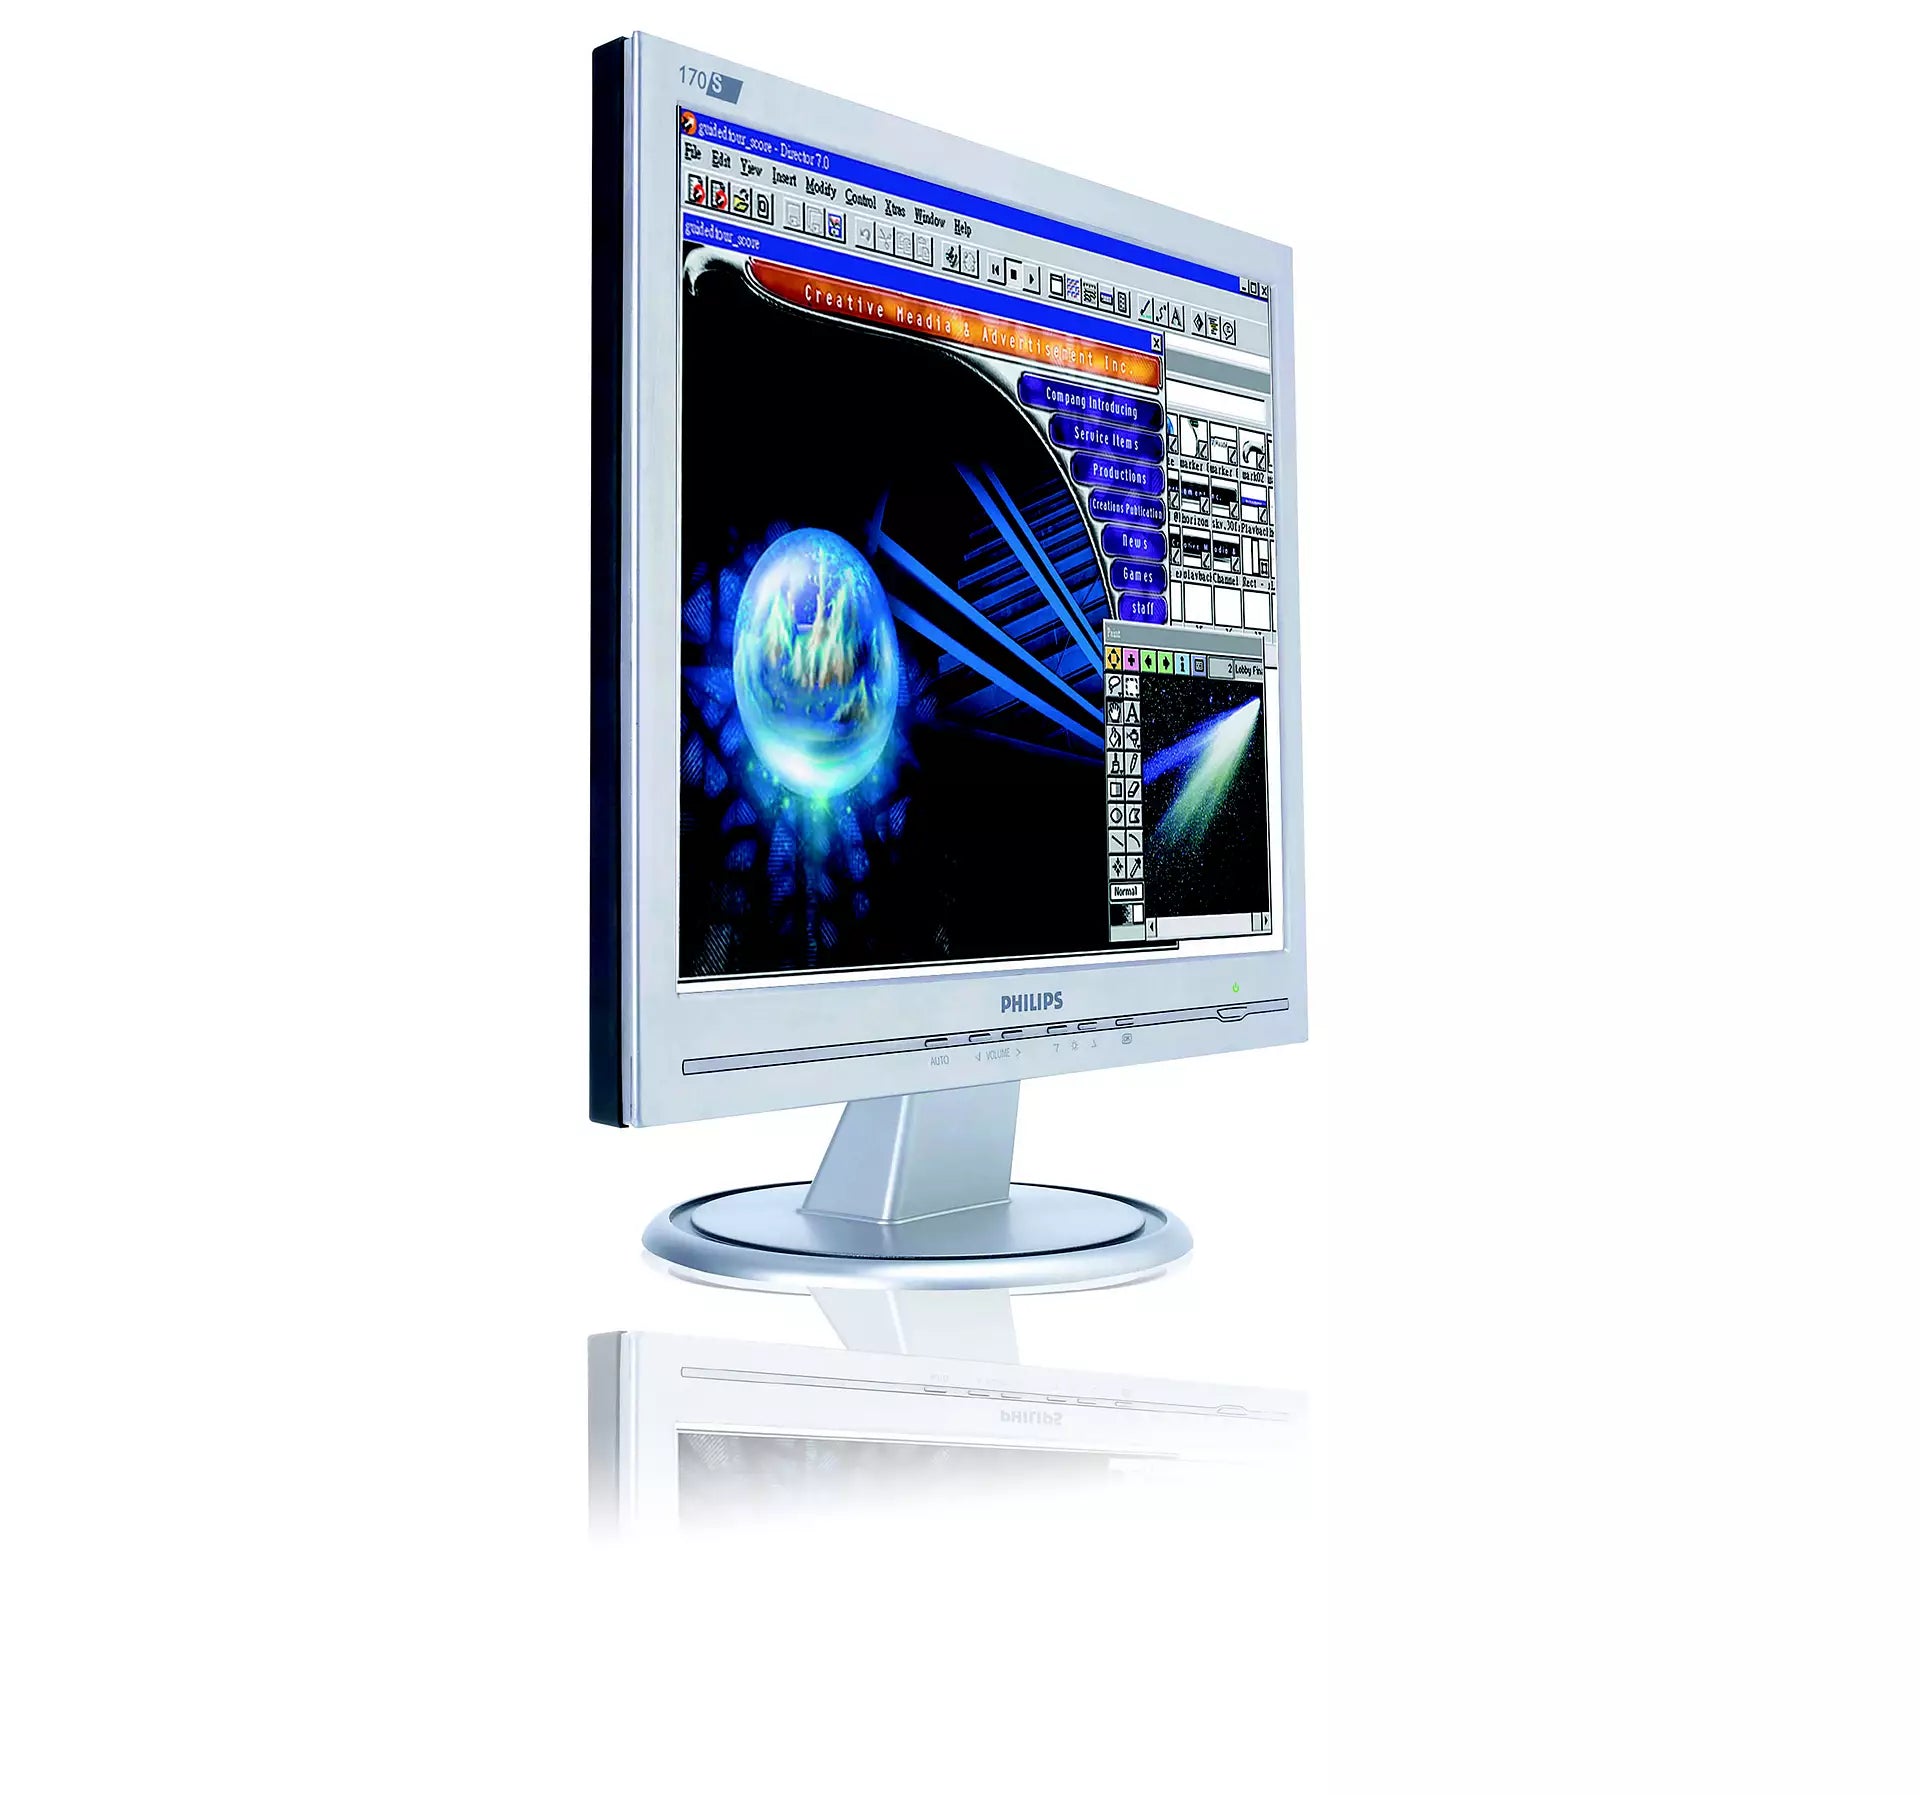 Philips 170A LCD-Monitor 17 Zoll 1280 x 1024 Pixel HD Helligkeit 300 cd/m2 Kontrast 800:1 Reaktionszeit 5 ms Perfekt für Ihr Büro